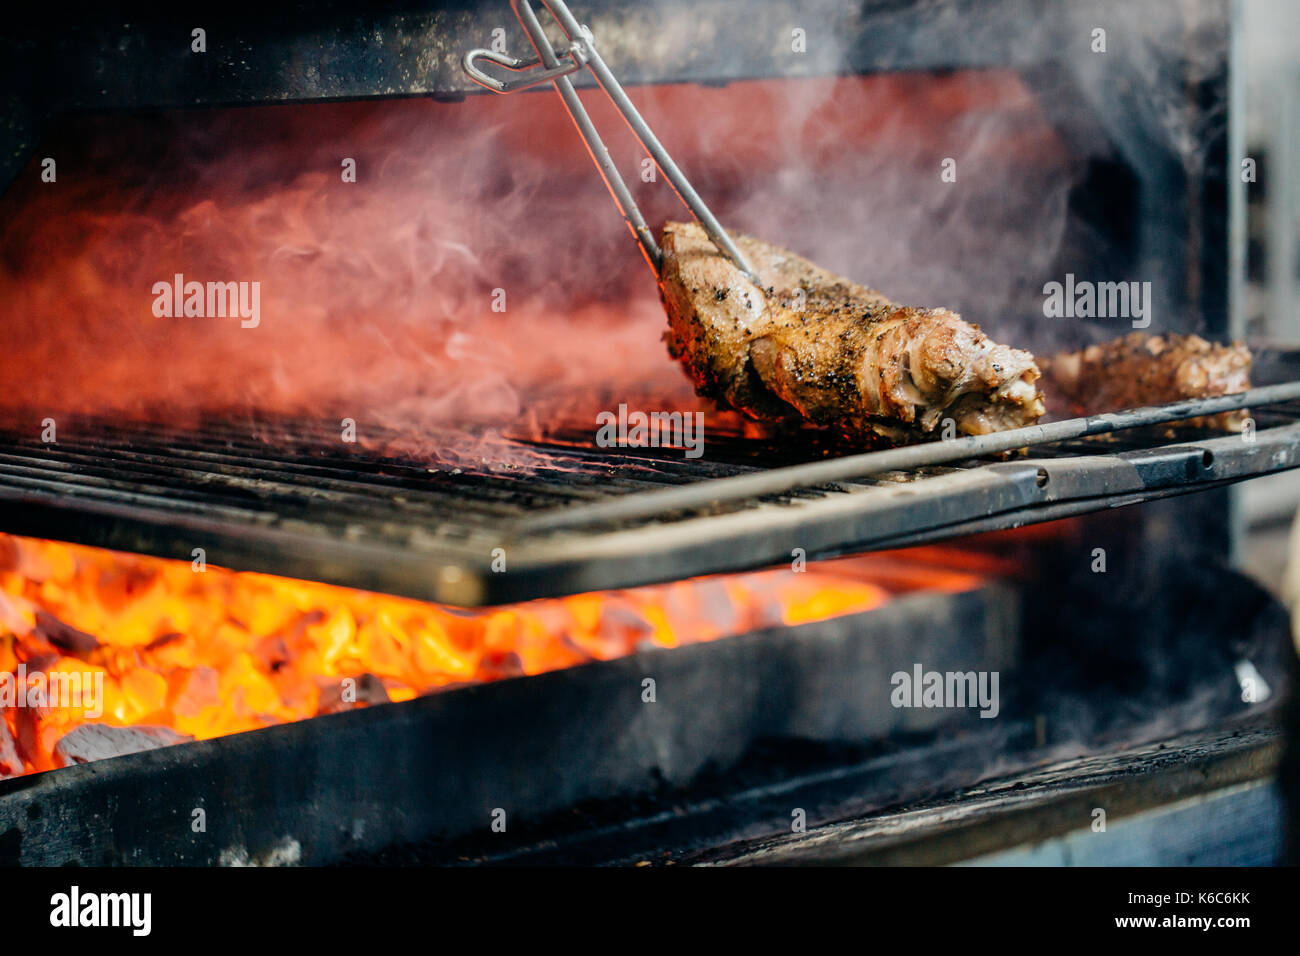 Leere flaming Holzkohlegrill mit offenen Feuer, bereit für Product  Placement. Konzept der Sommer grillen, Grill, Grill und Party  Stockfotografie - Alamy